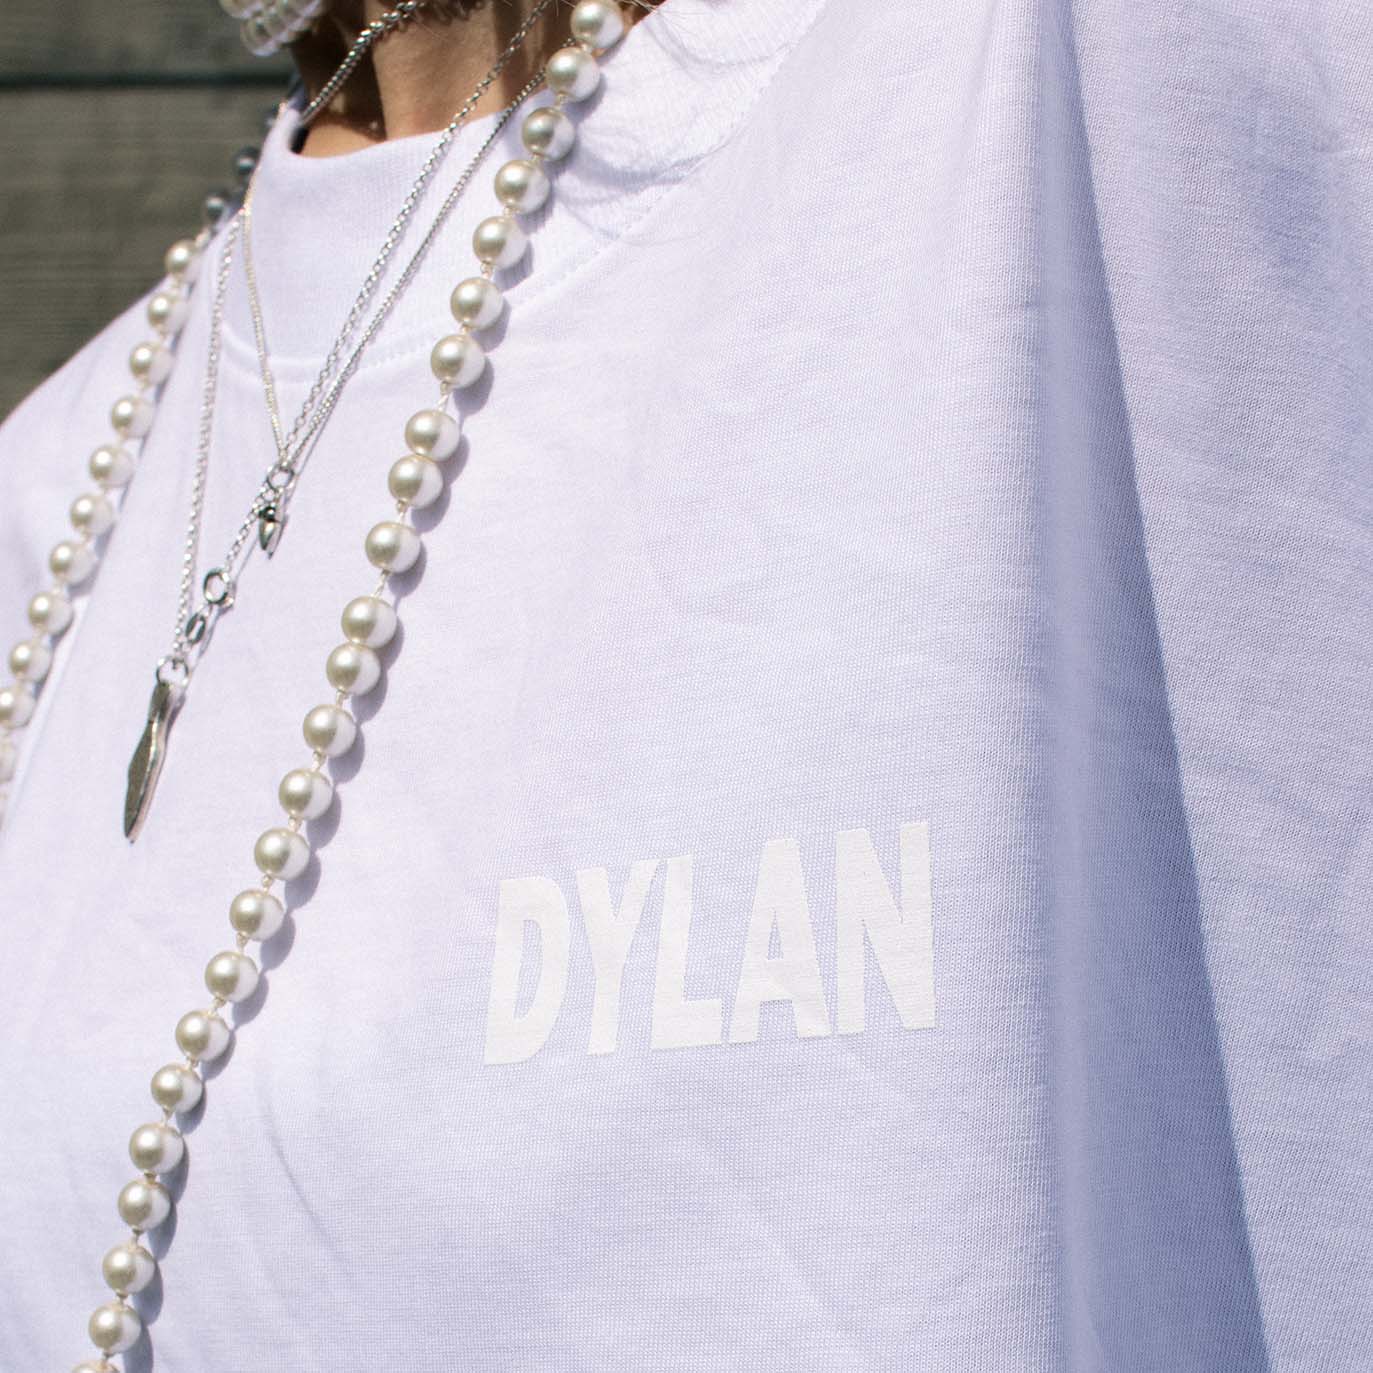 Dylan - Dylan Star Logo White T-shirt